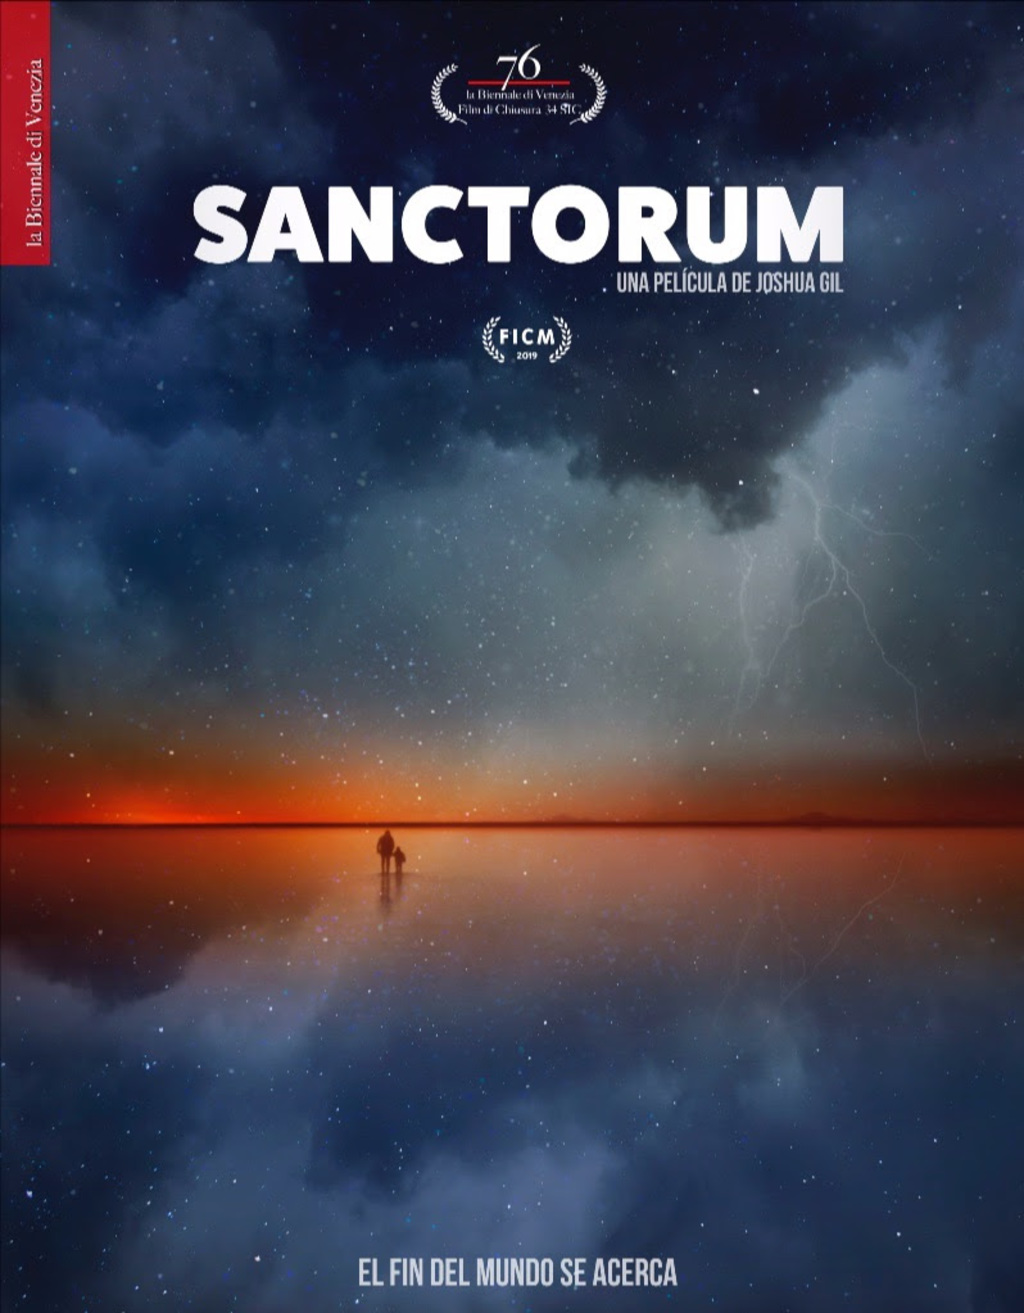 Sanctorum: el filme rodeado de marihuana